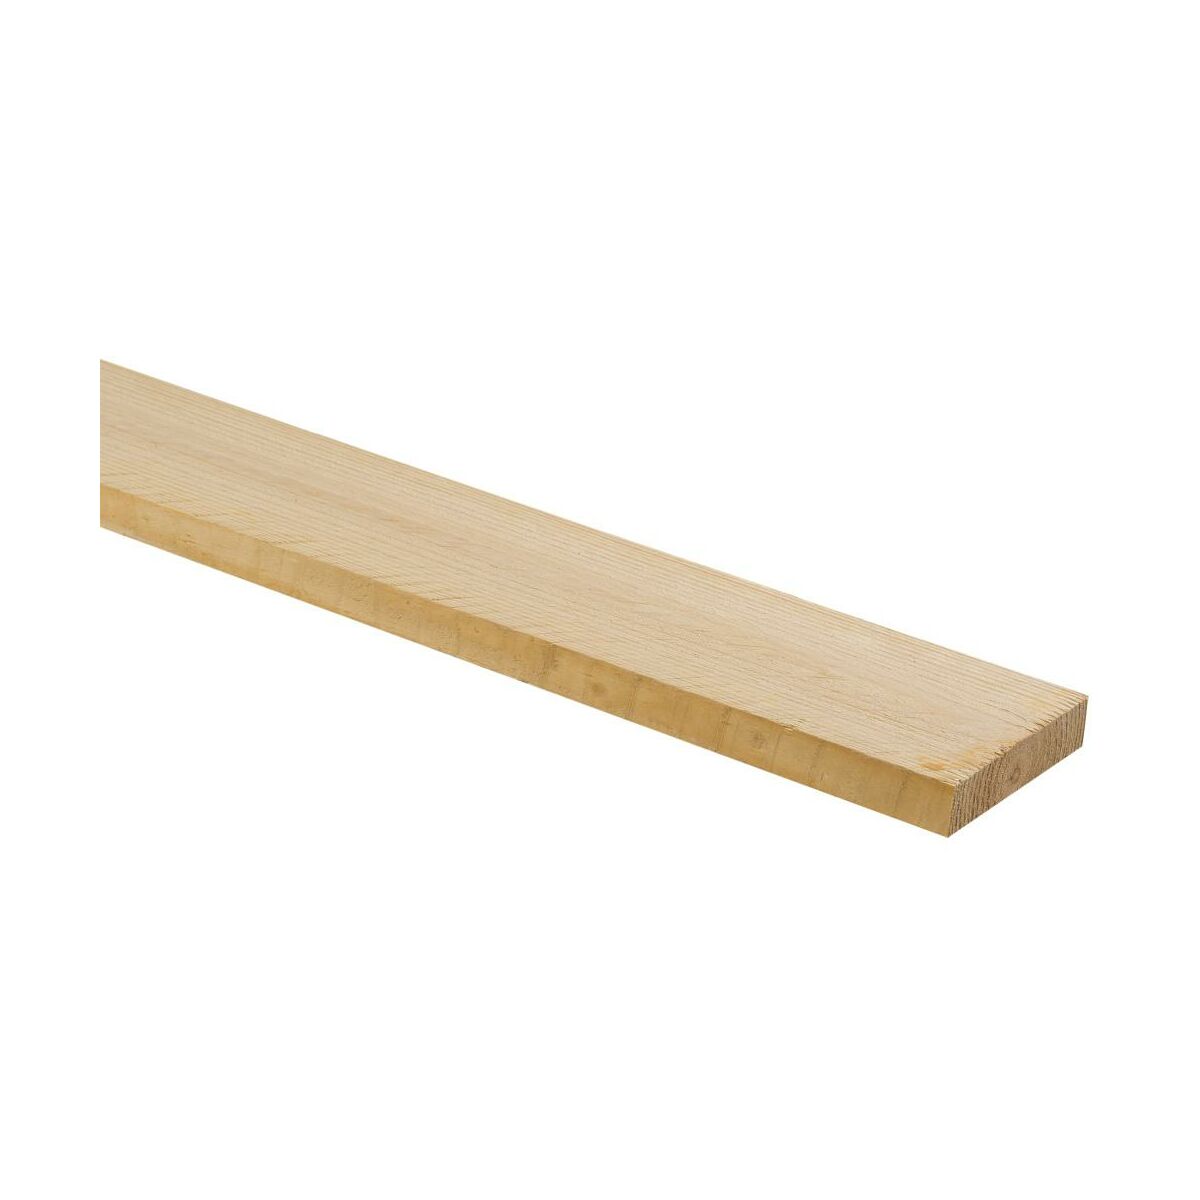 Drewno konstrukcyjne nieheblowane sosnowe surowe 20x100x2500 mm